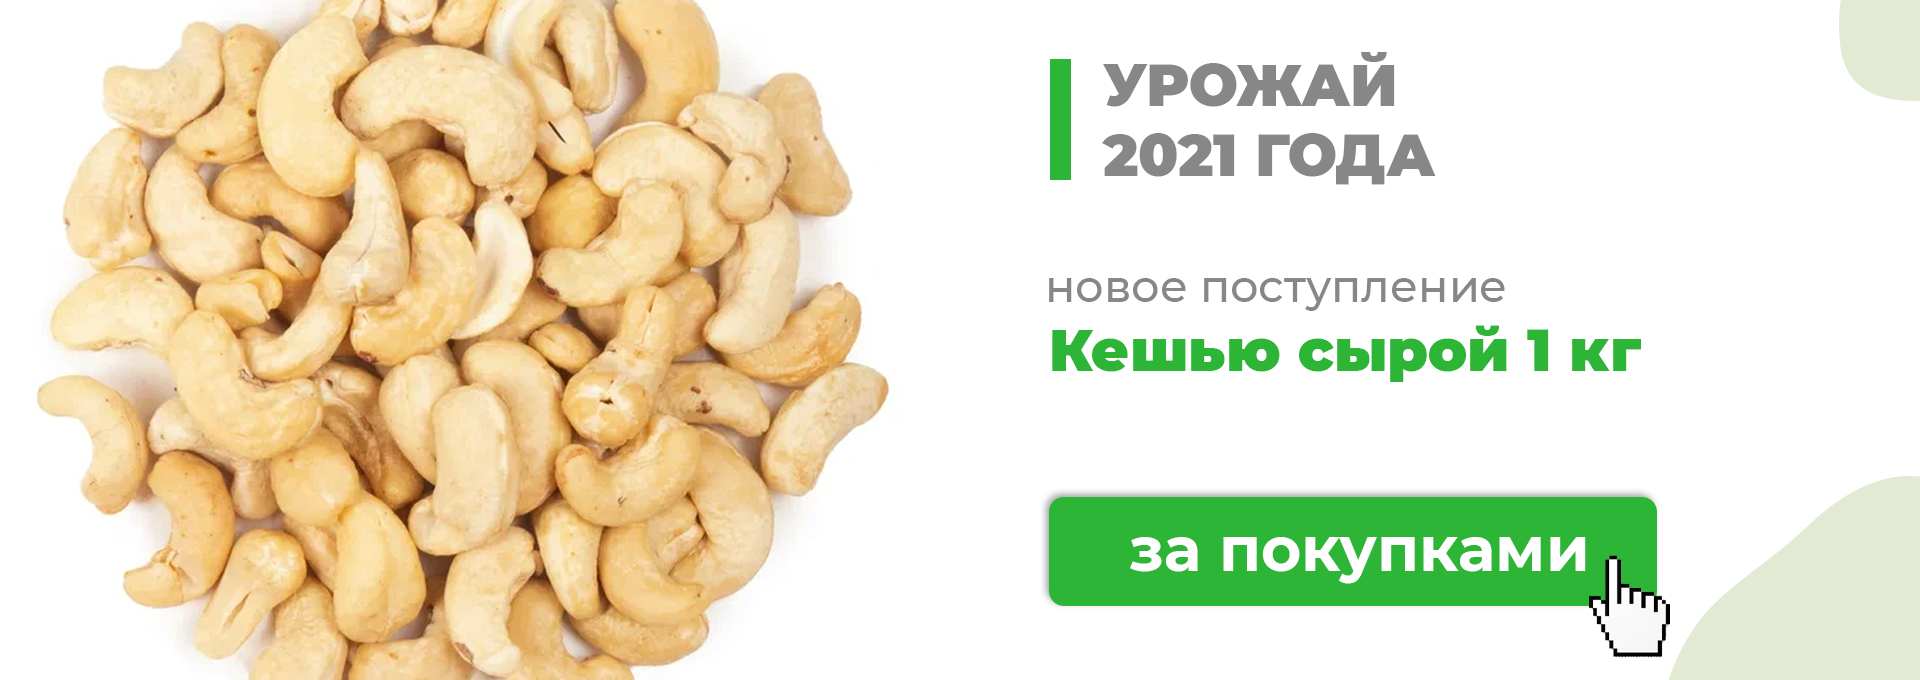 Орехи Купить Недорого Интернет Магазин Москва